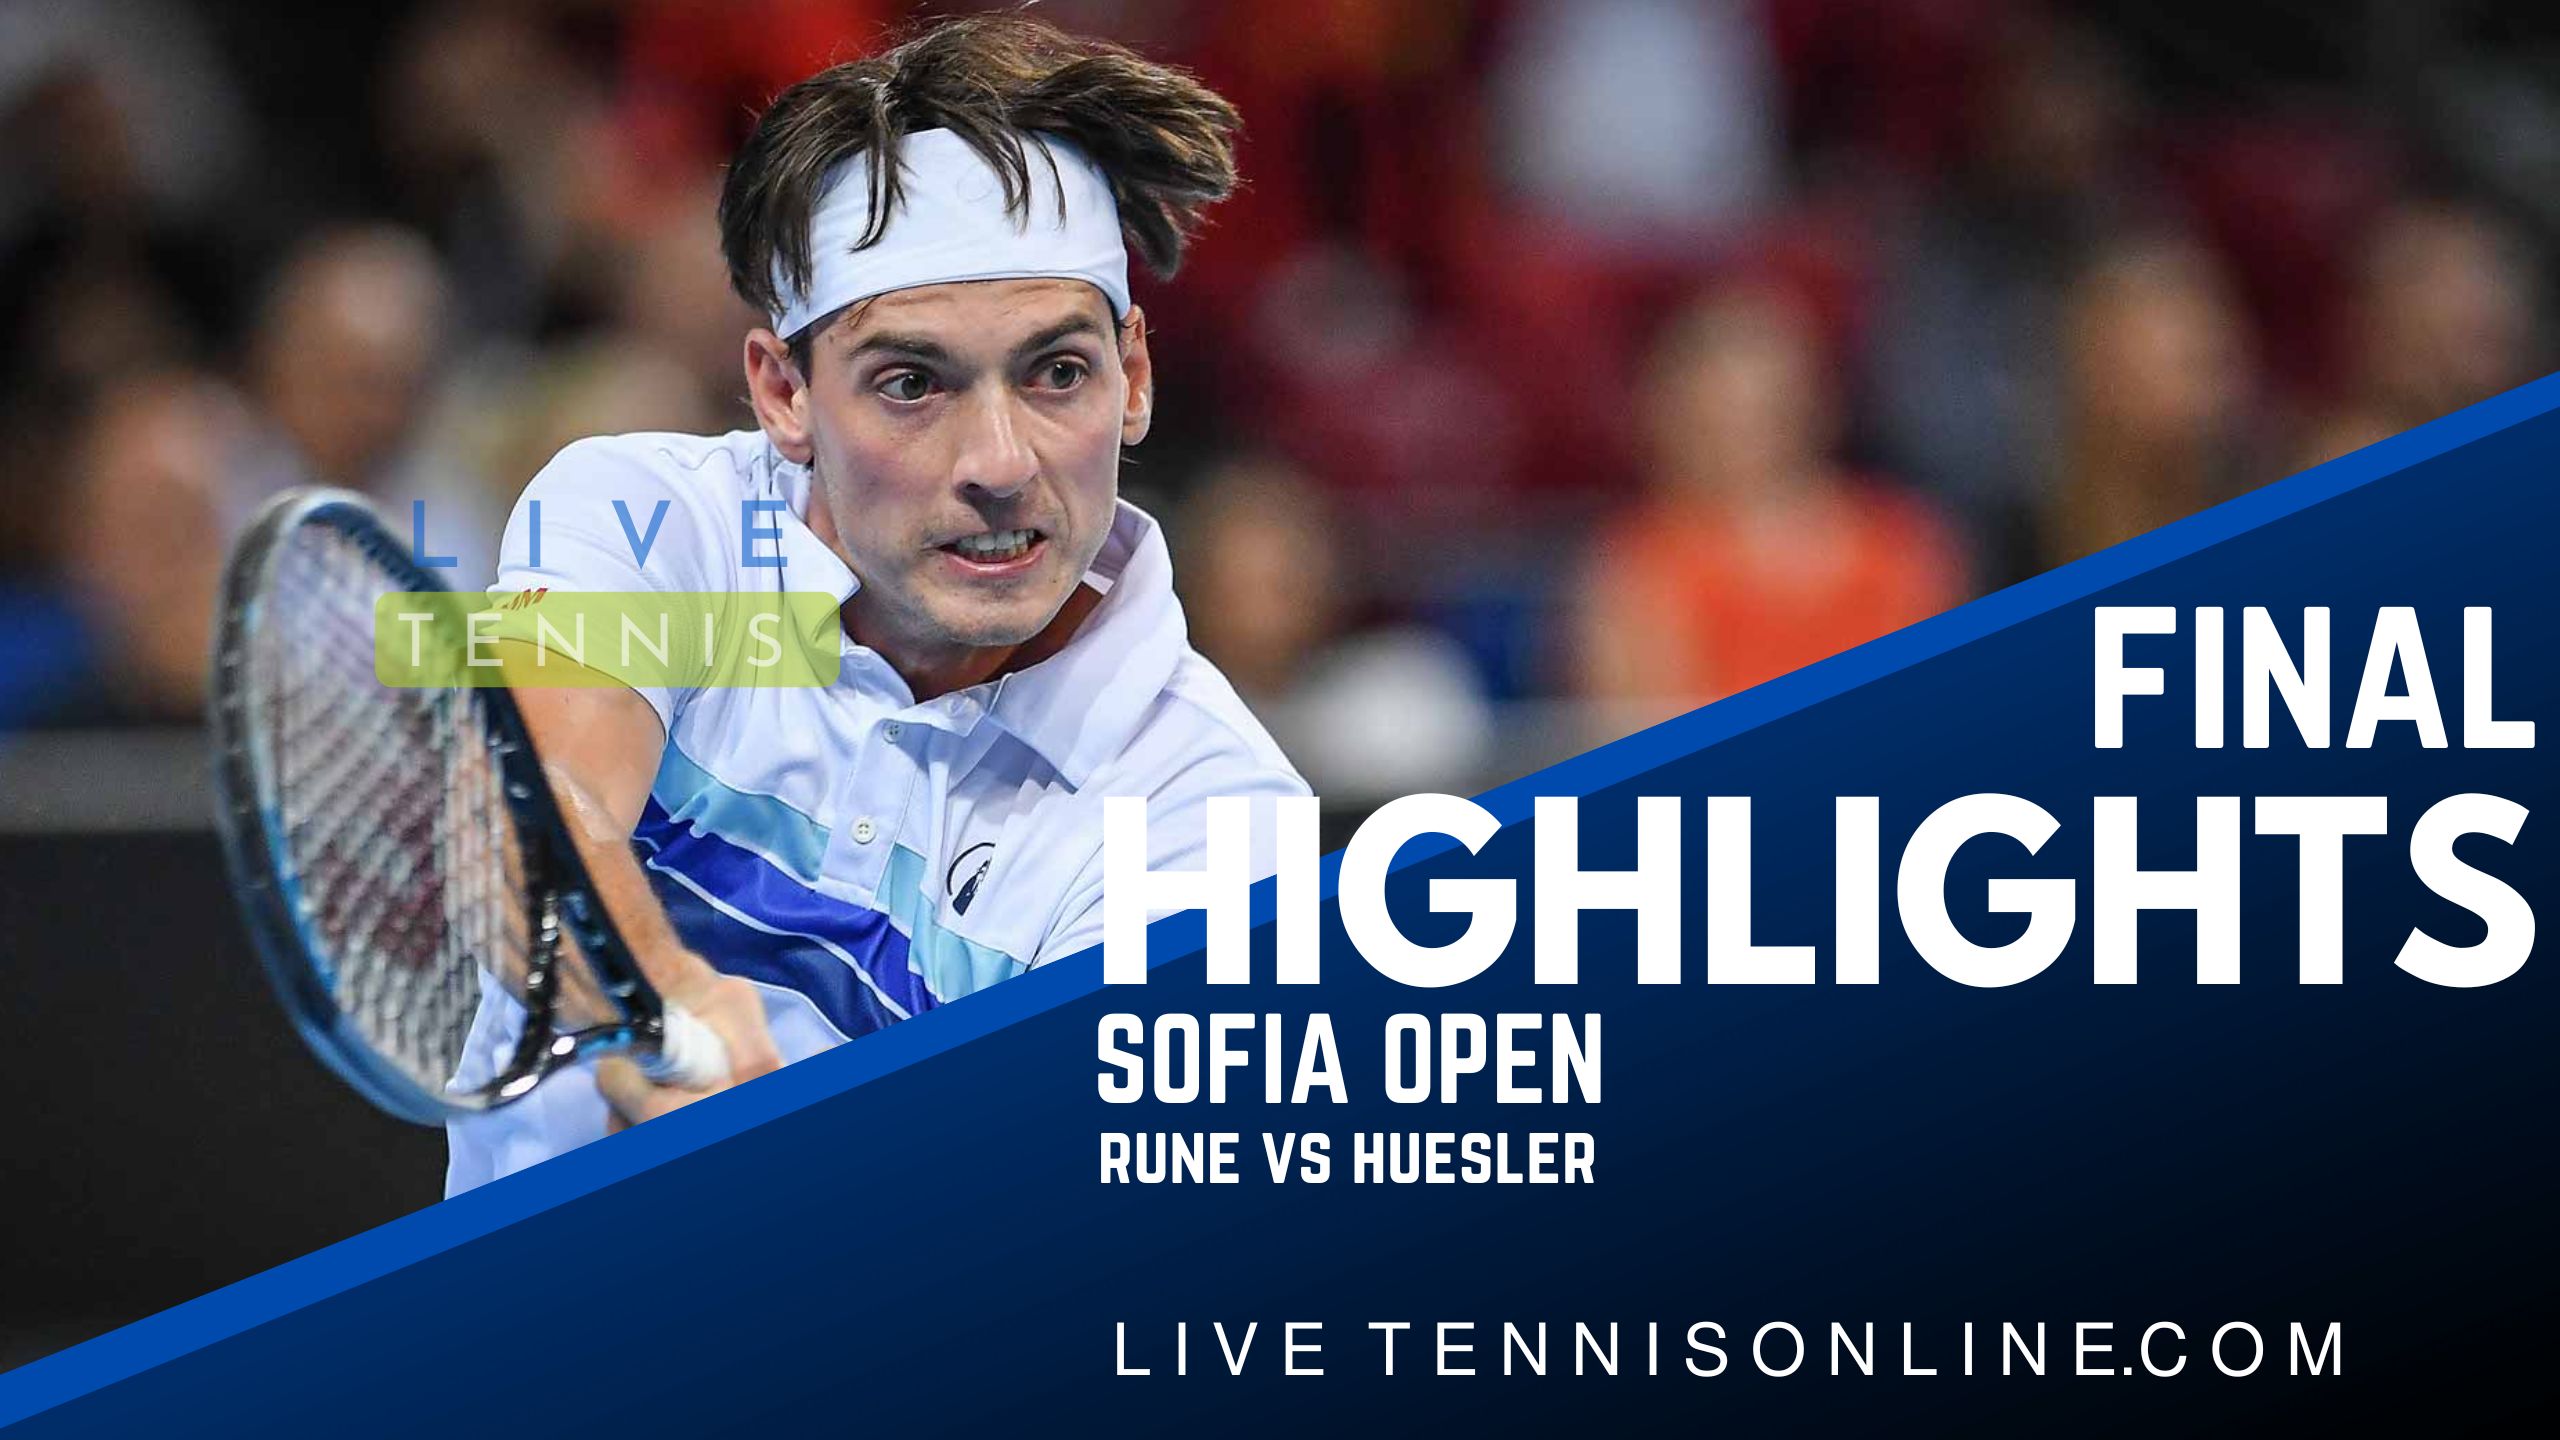 Rune Vs Huesler Final Highlights 2022 Sofia Open